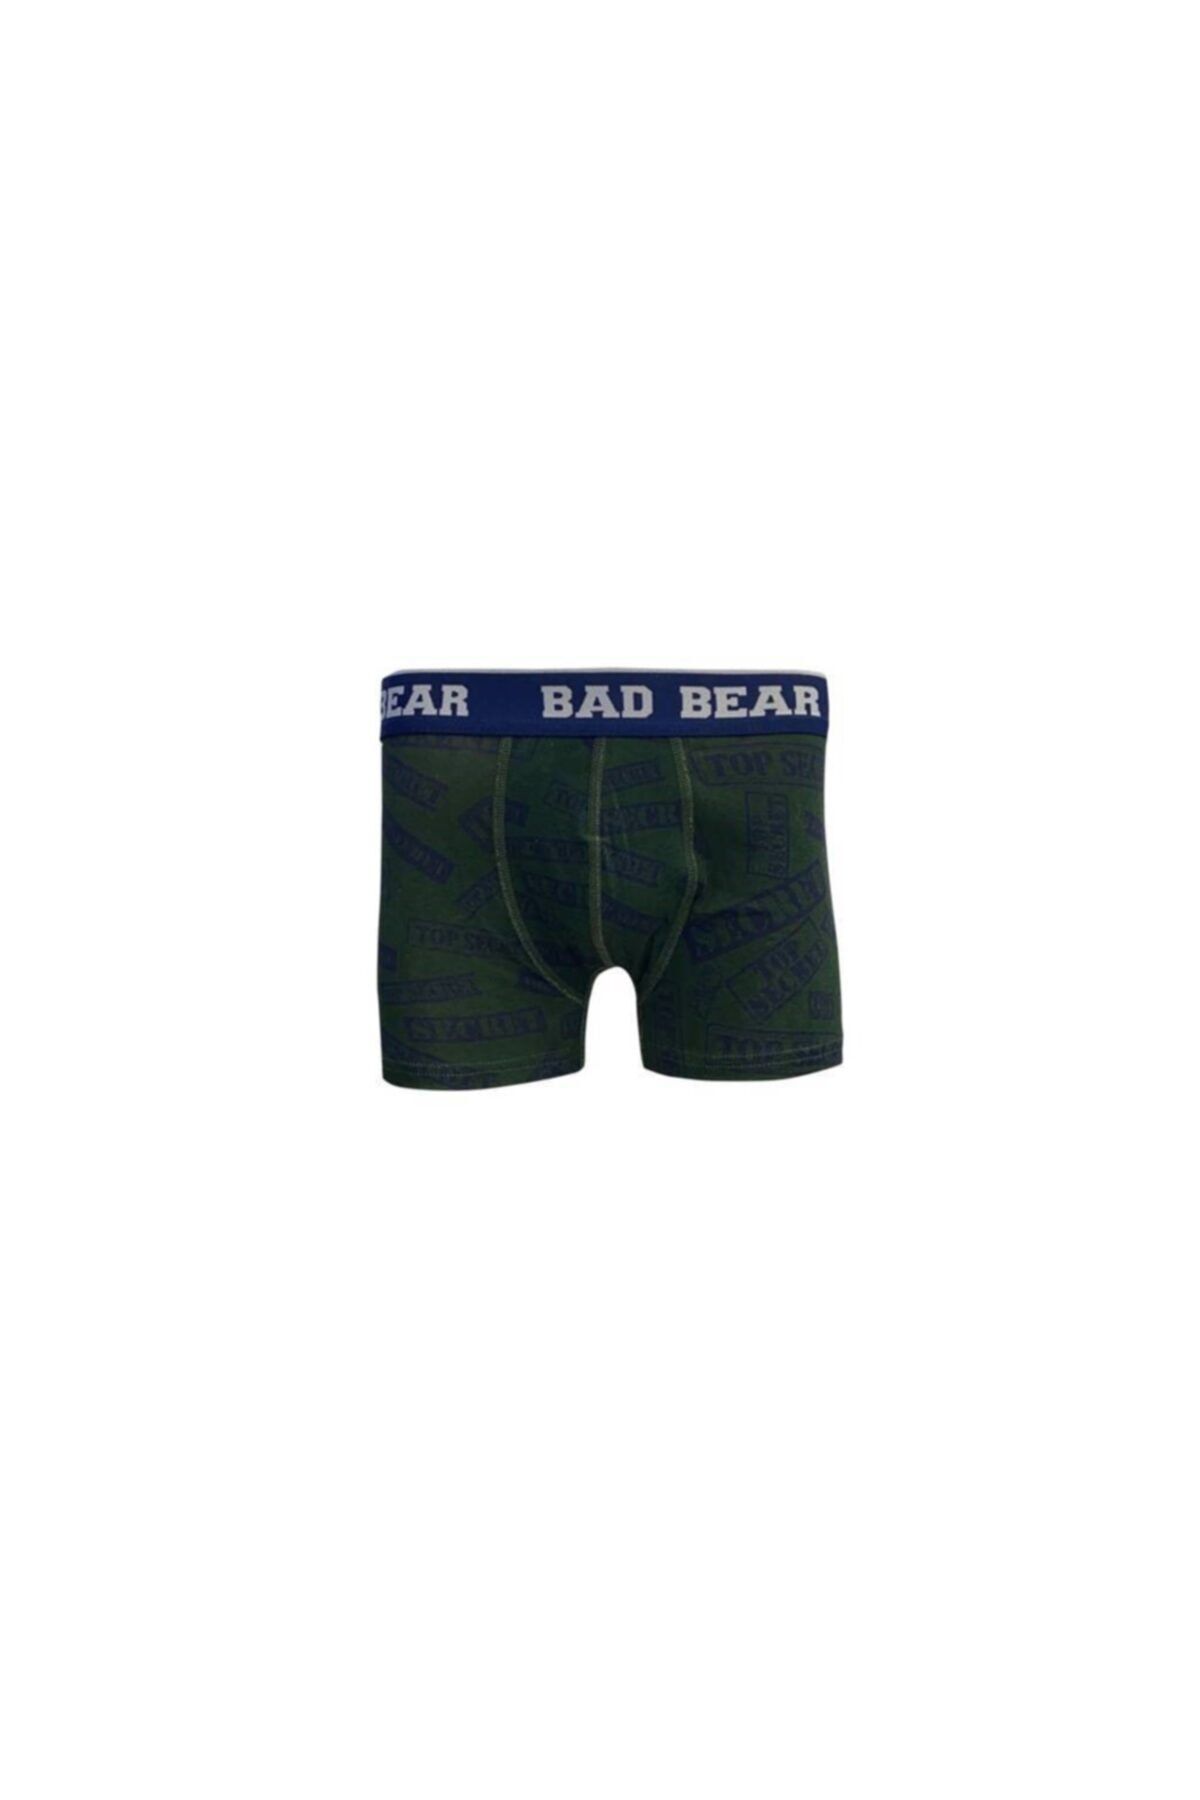 Bad Bear Erkek Boxer Secret 210103011-frt